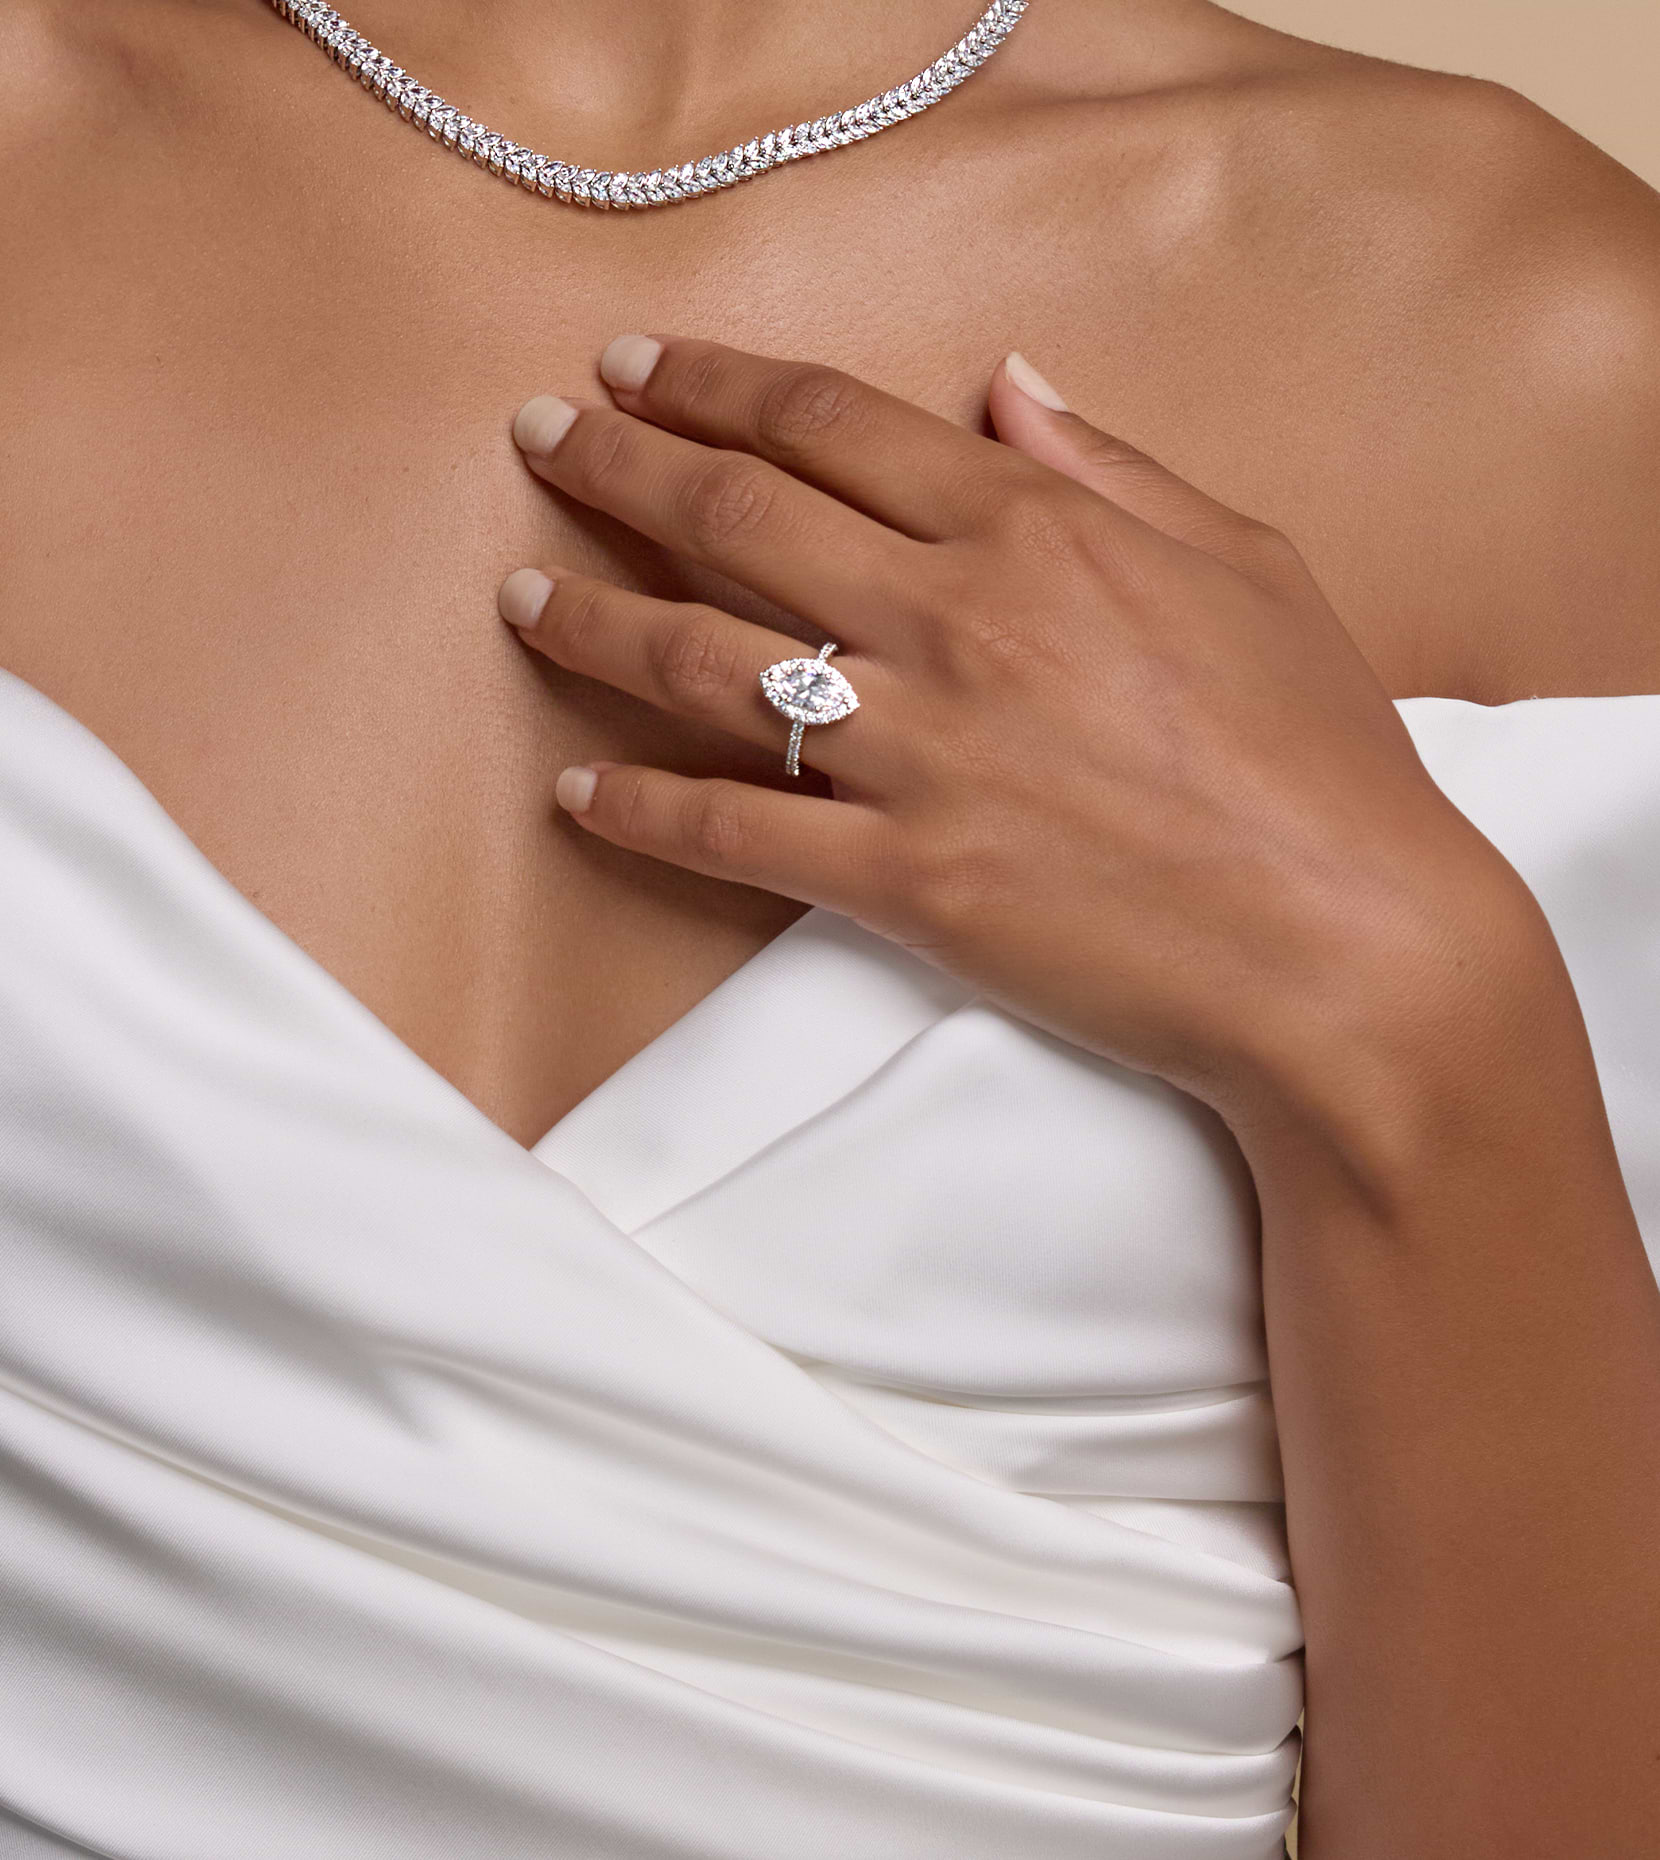 Bild des Halses einer Frau mit einer Diamantkette und ihrer sanft auf ihre Brust gelegten Hand mit einem Diamantring